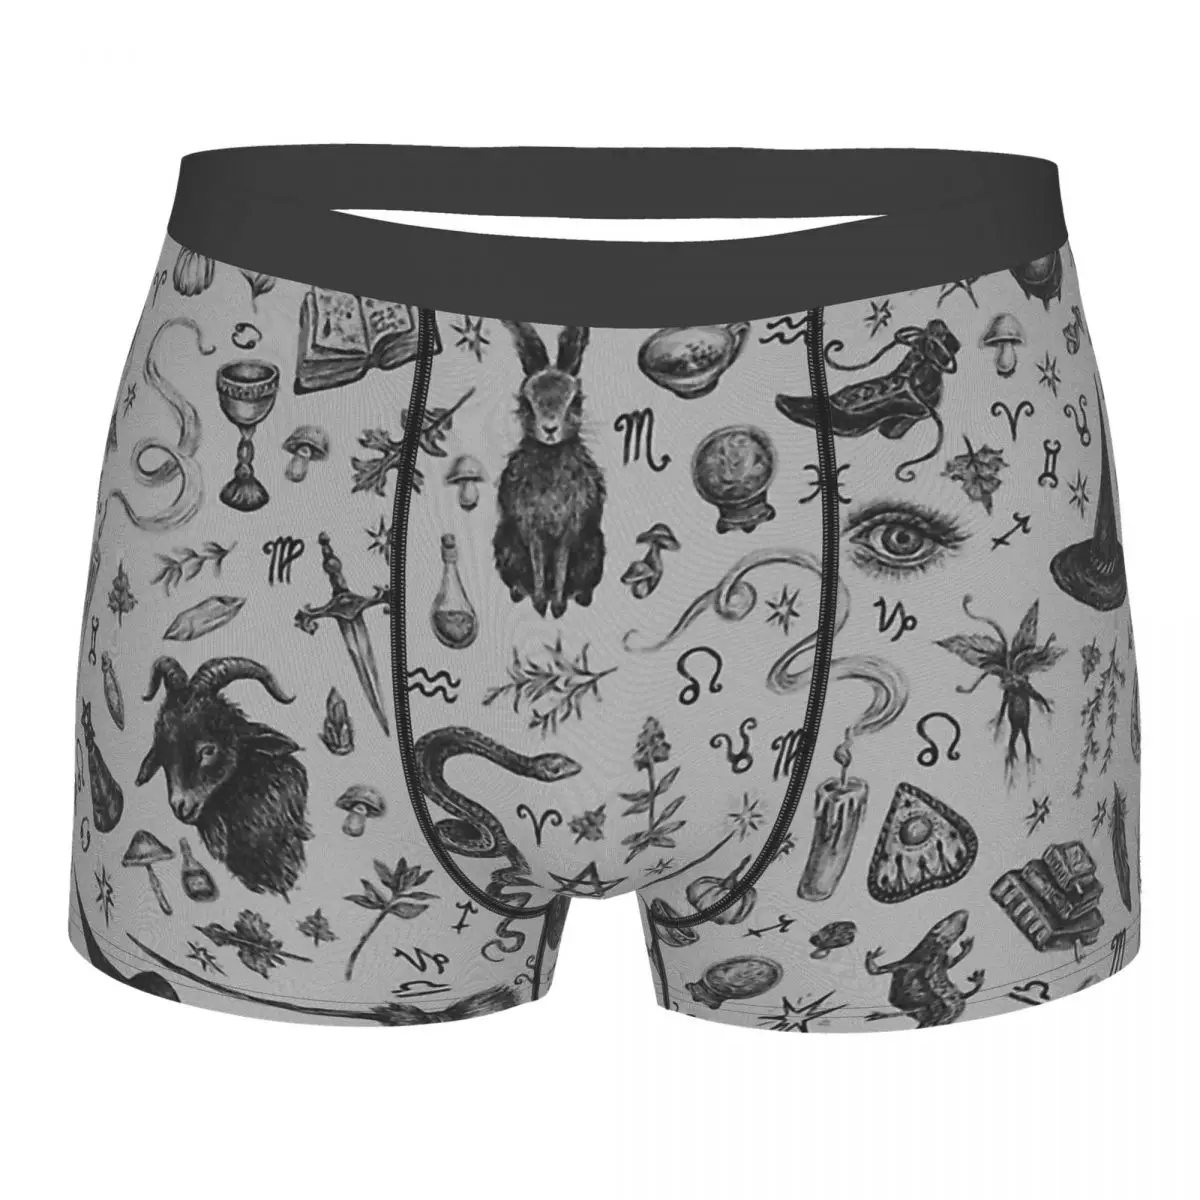 

Goth 1980s Subculture Rock Romance Salem Witch Underpants Homme Panties Men's Underwear Comfortable Shorts Boxer Briefs